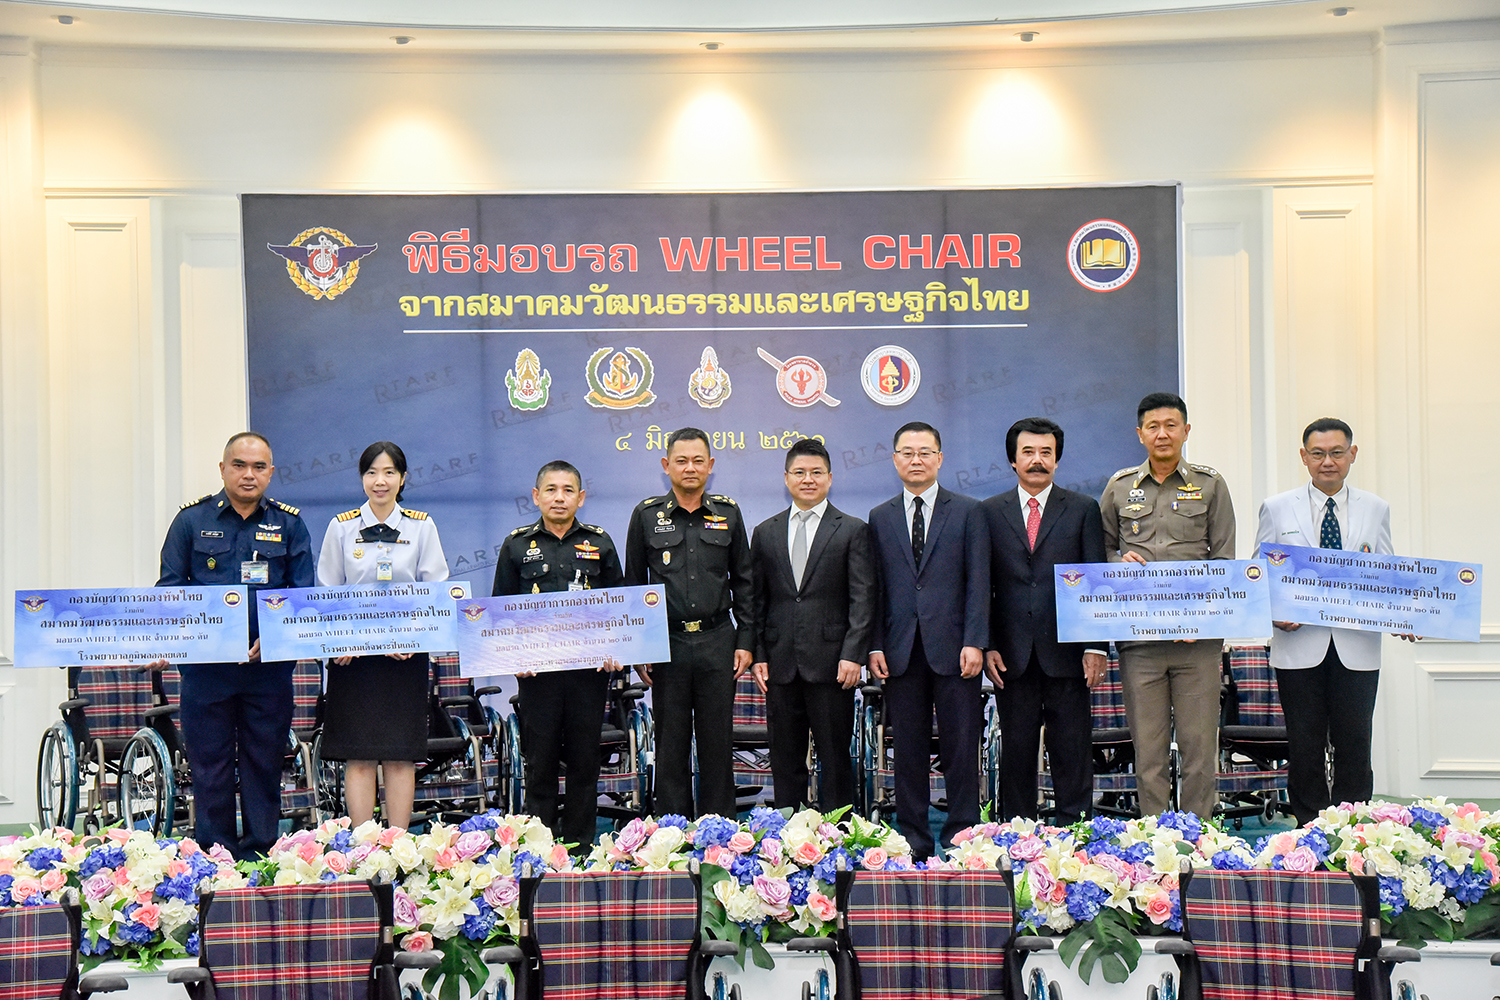 พิธีมอบรถ Wheel Chair จากสมาคมวัฒนธรรมและเศรษฐกิจไทย ให้แก่กองบัญชาการกองทัพไทย